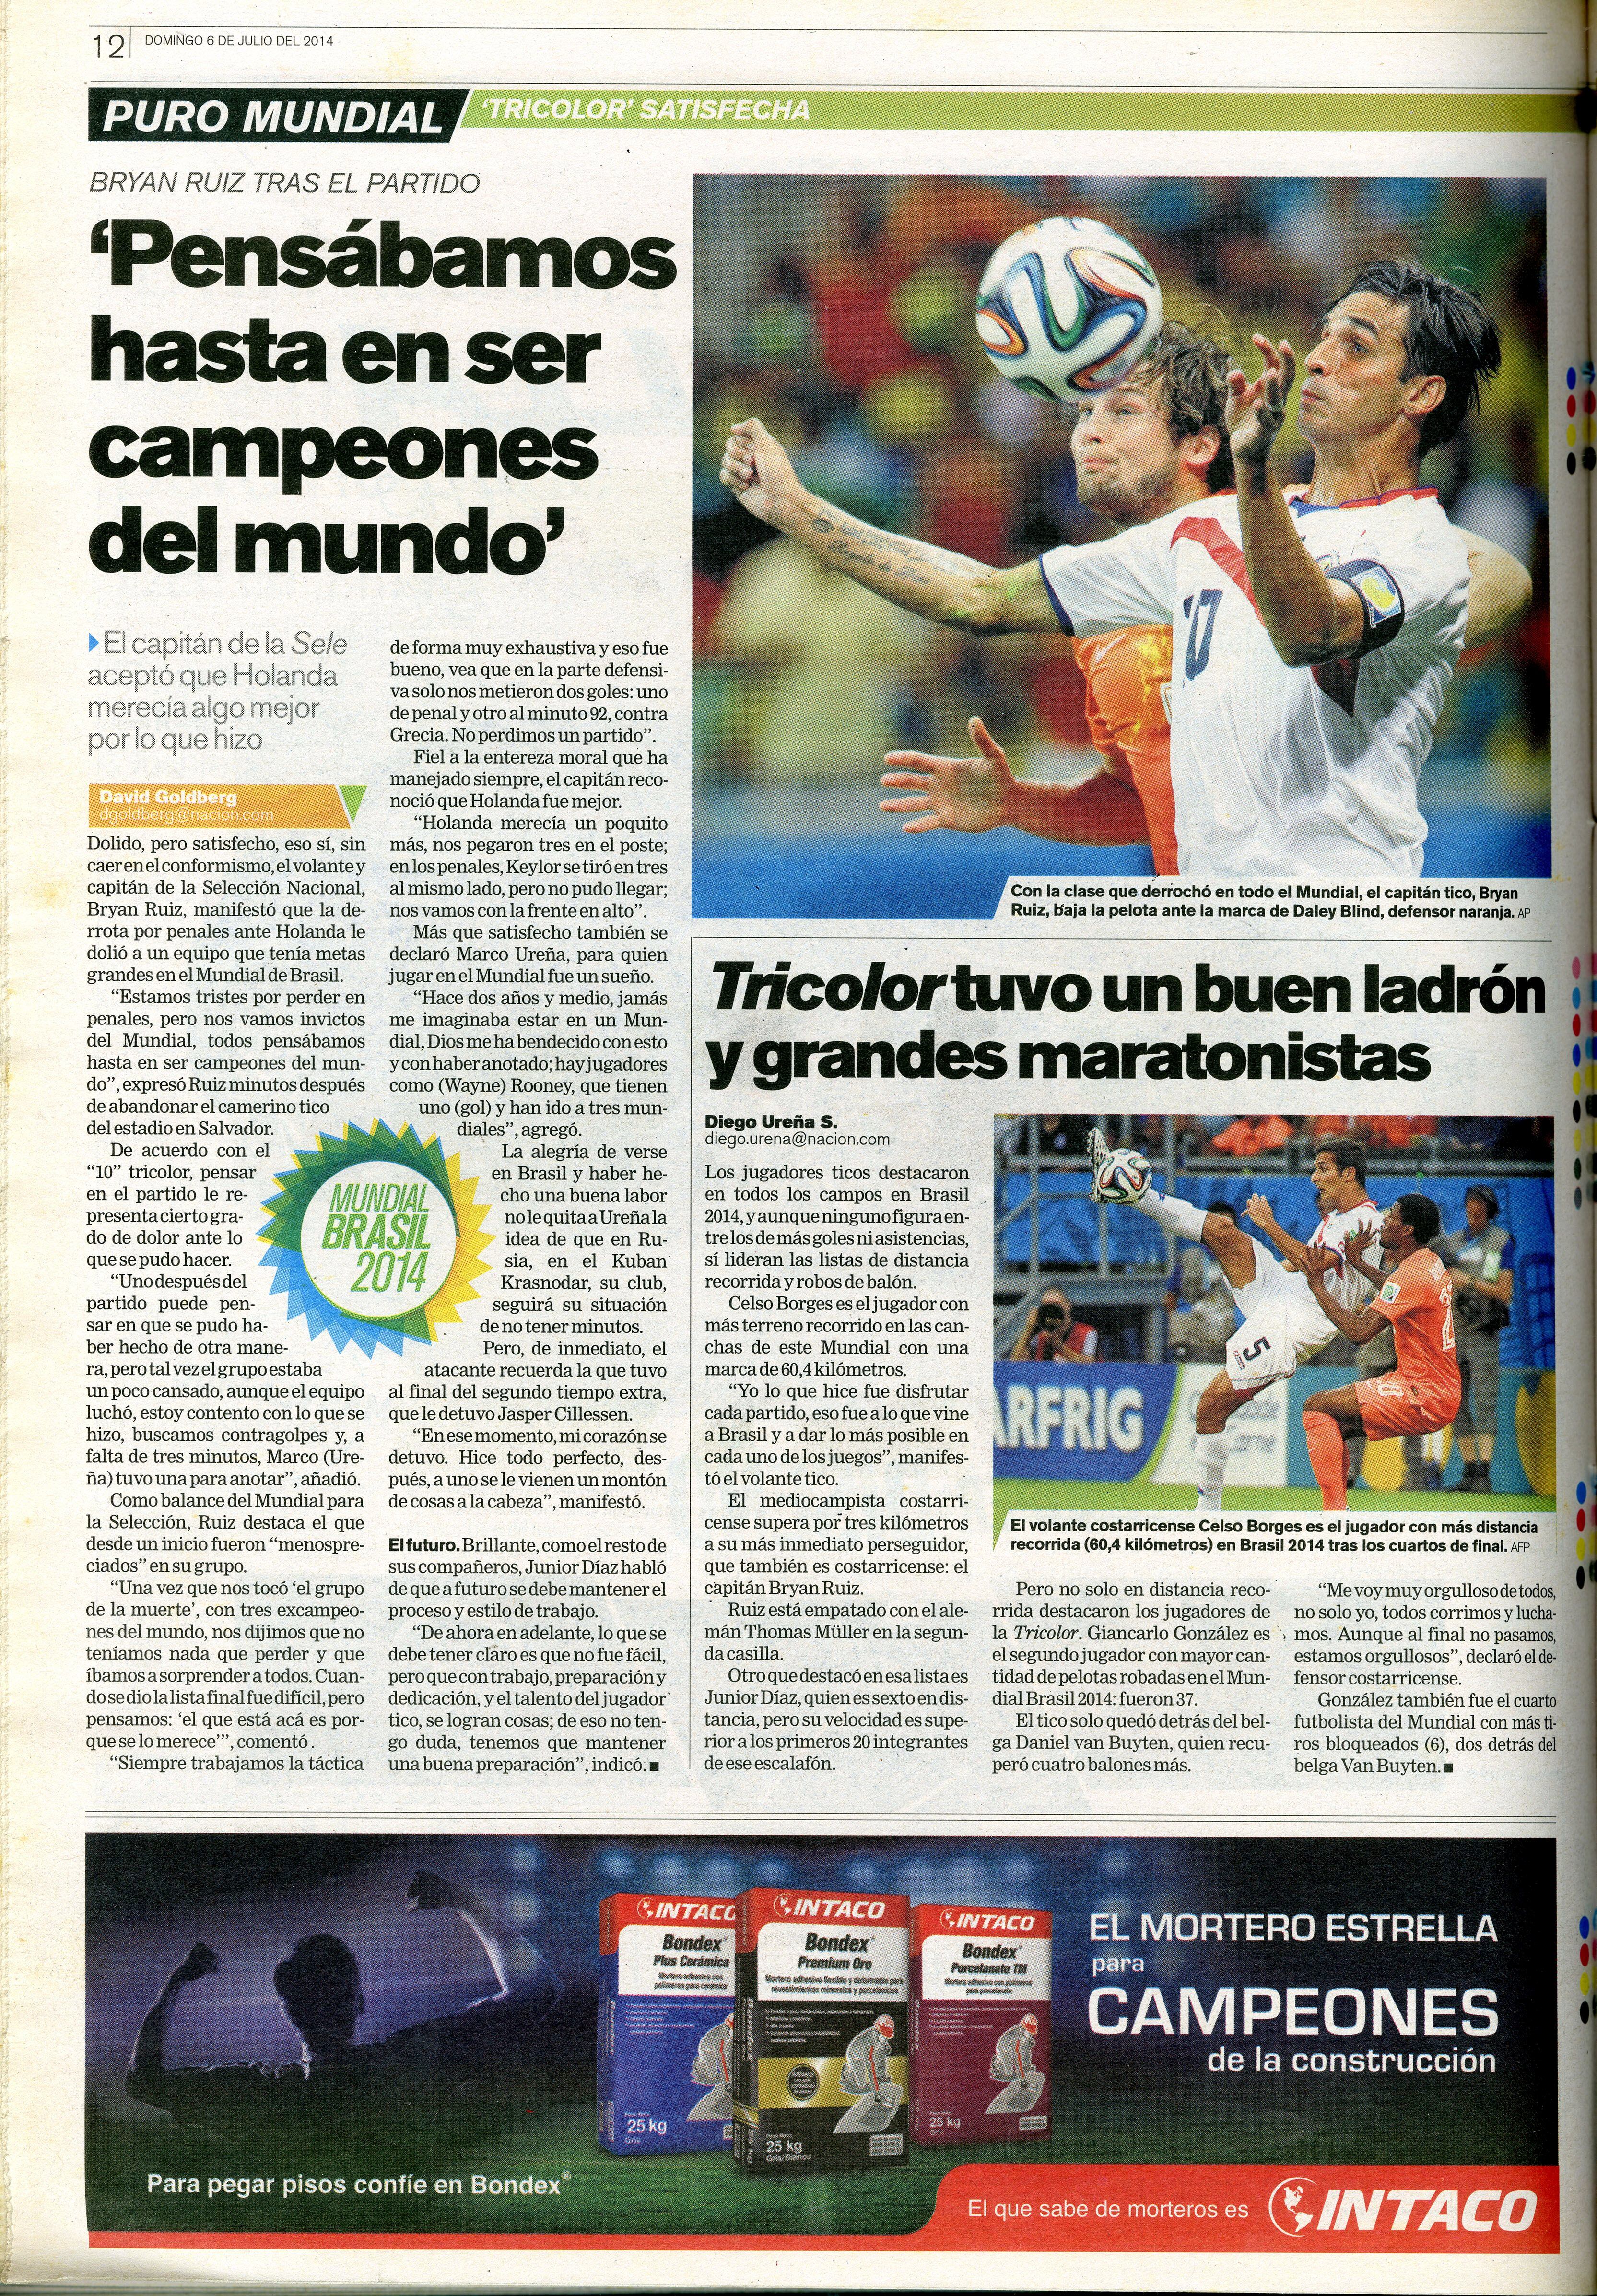 Bryan Ruiz rescató que la Selección de Costa Rica se marchó invicta del Mundial de Brasil 2014. Fotografía: Archivo LN